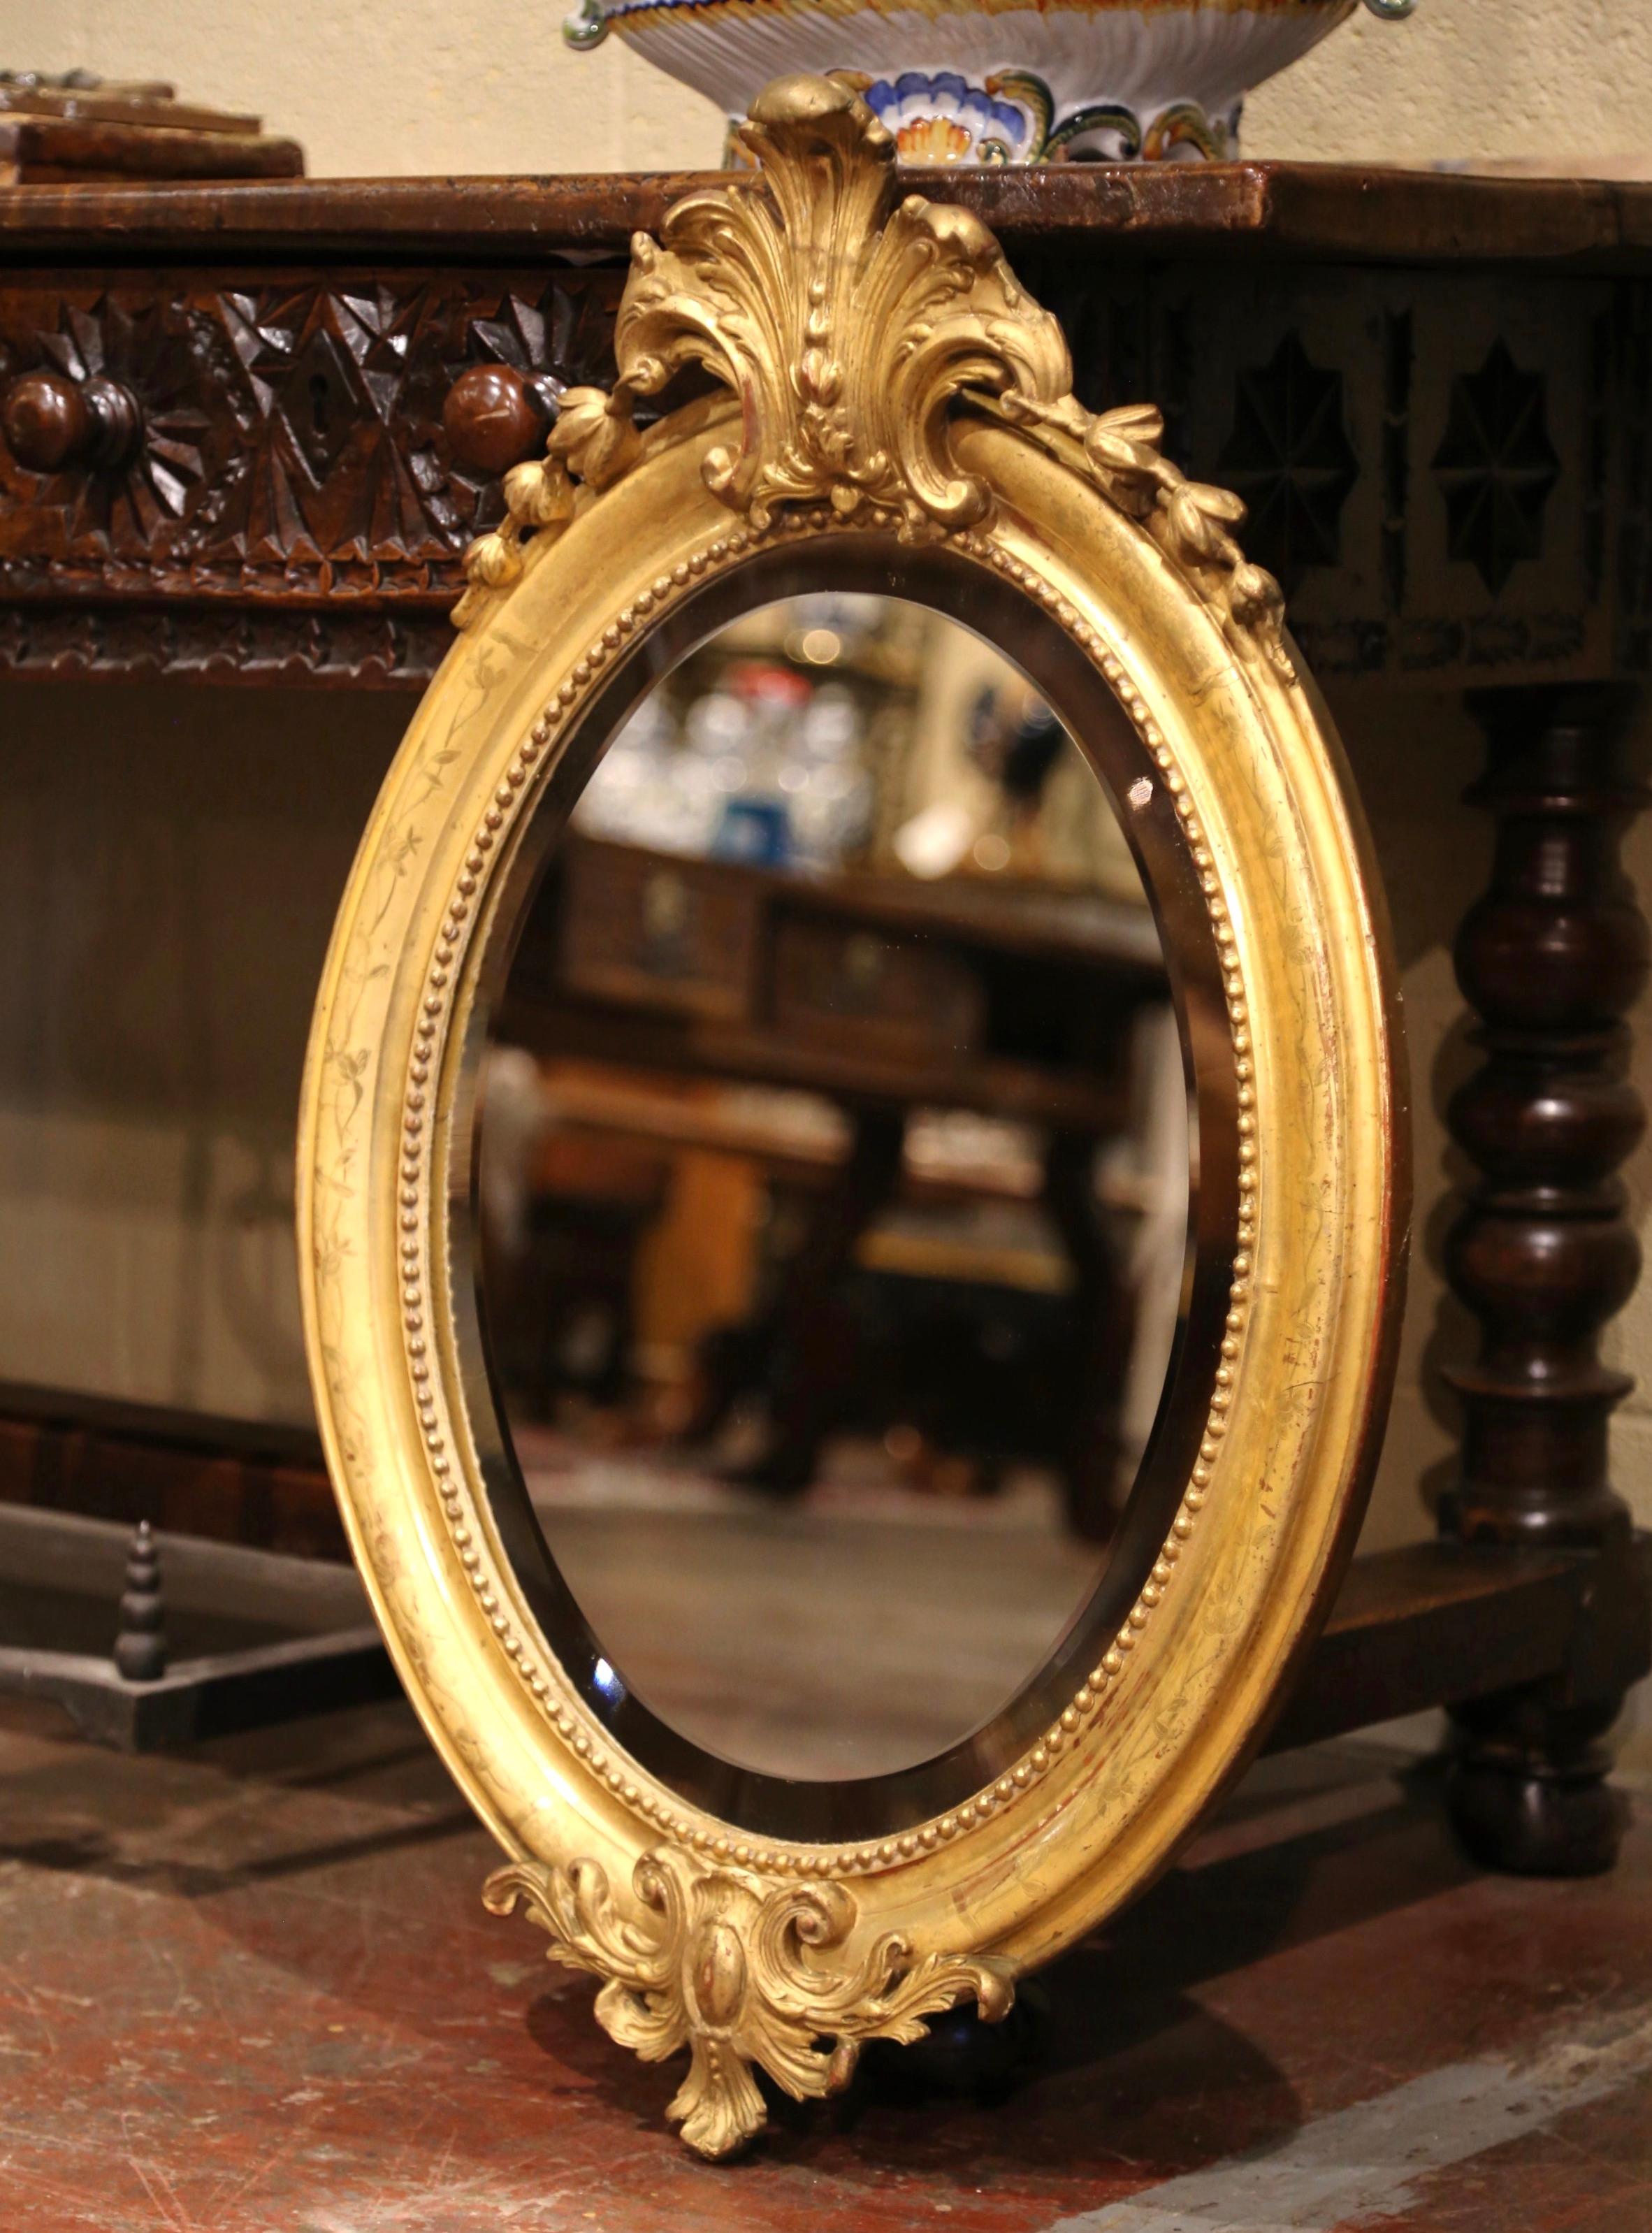 Cet élégant miroir doré ancien a été créé en France, vers 1870. De forme ovale, le miroir présente un cartouche décoratif en forme de coquillage flanqué d'un décor de feuillage, de discrets motifs floraux gravés autour du cadre et d'un autre motif